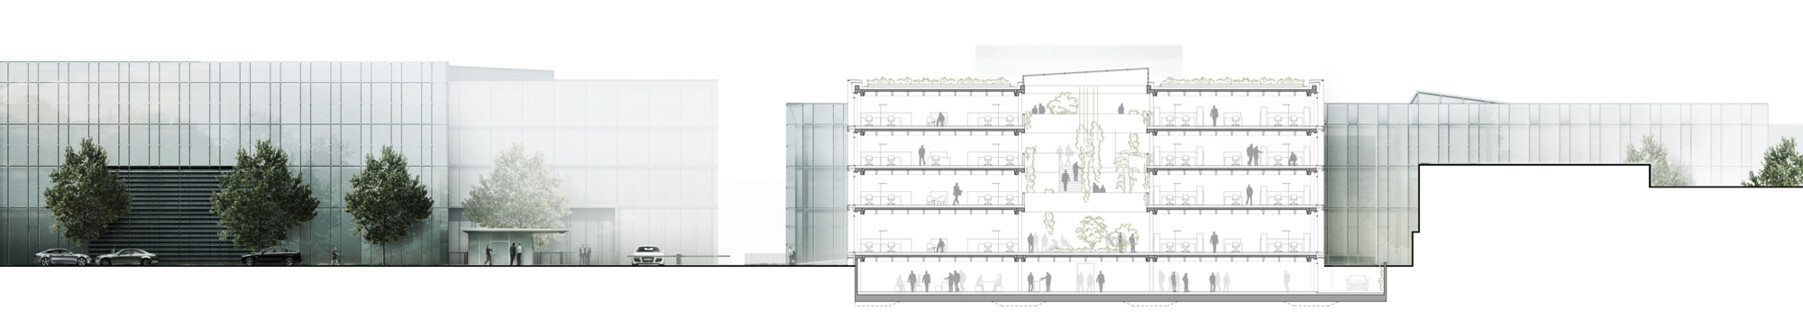 Entwurf eines Bürogebäudes und eines Pfortengebäudes unter Einbeziehung der städtebaulichen Weiterentwicklung des Campus HUGO BOSS